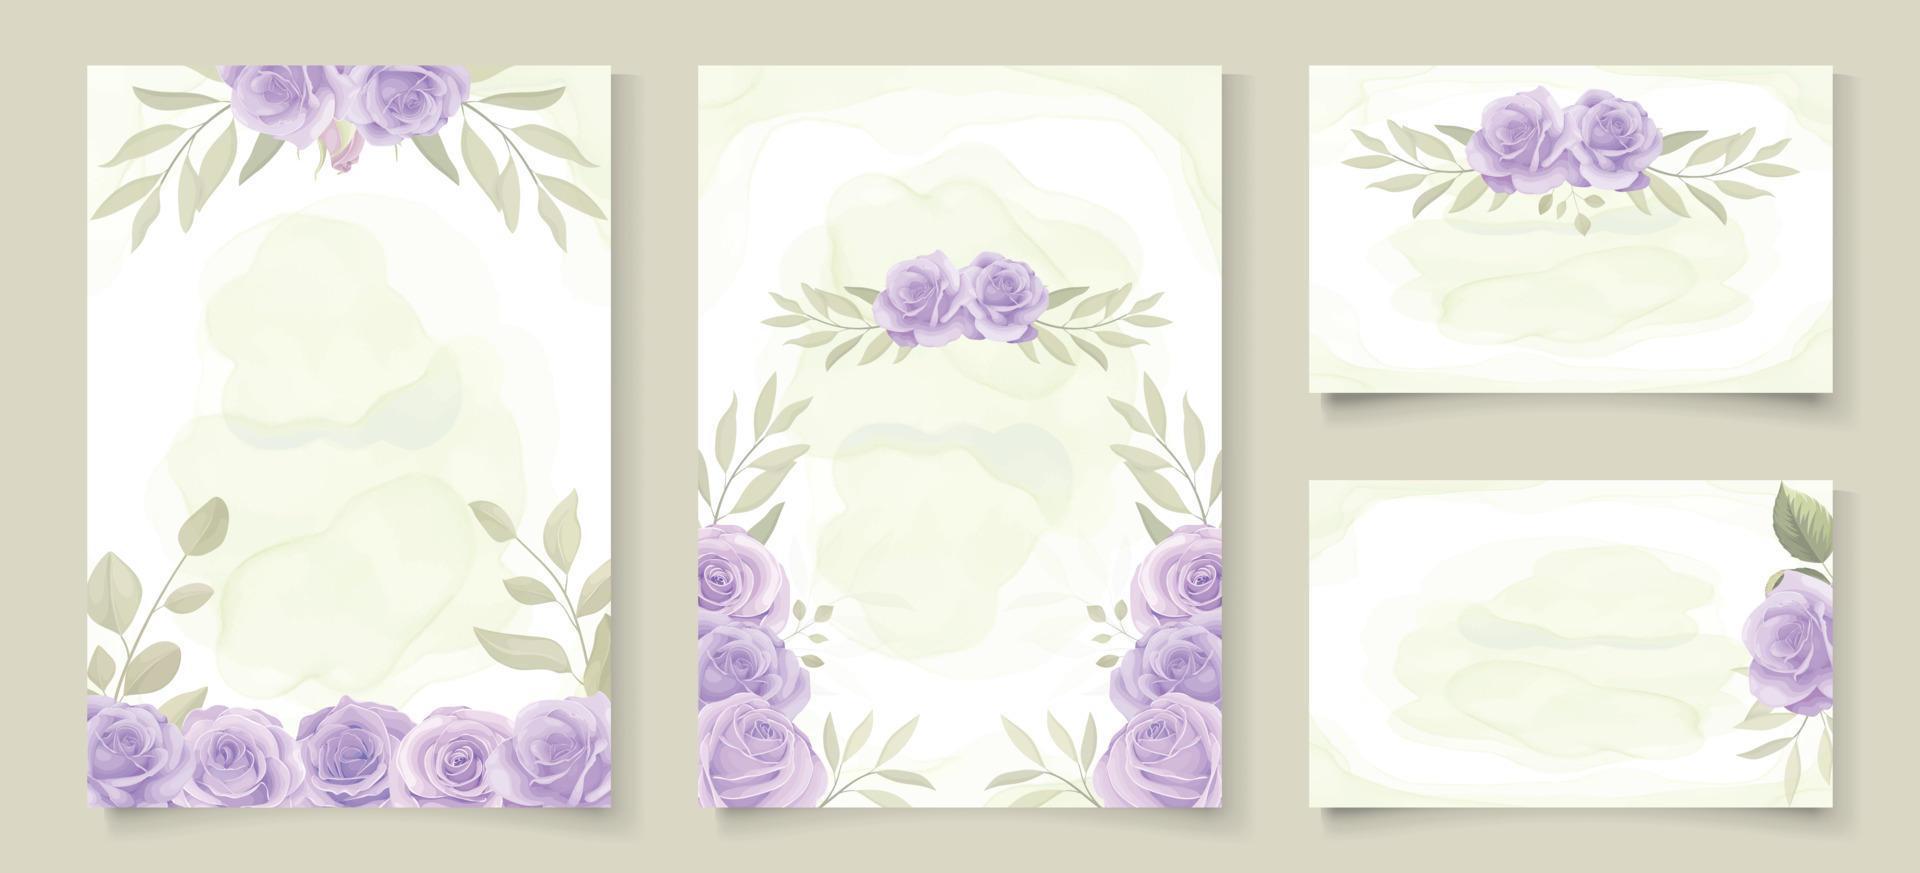 ensemble de modèles d'invitation de mariage avec un beau design de roses en fleurs violettes vecteur